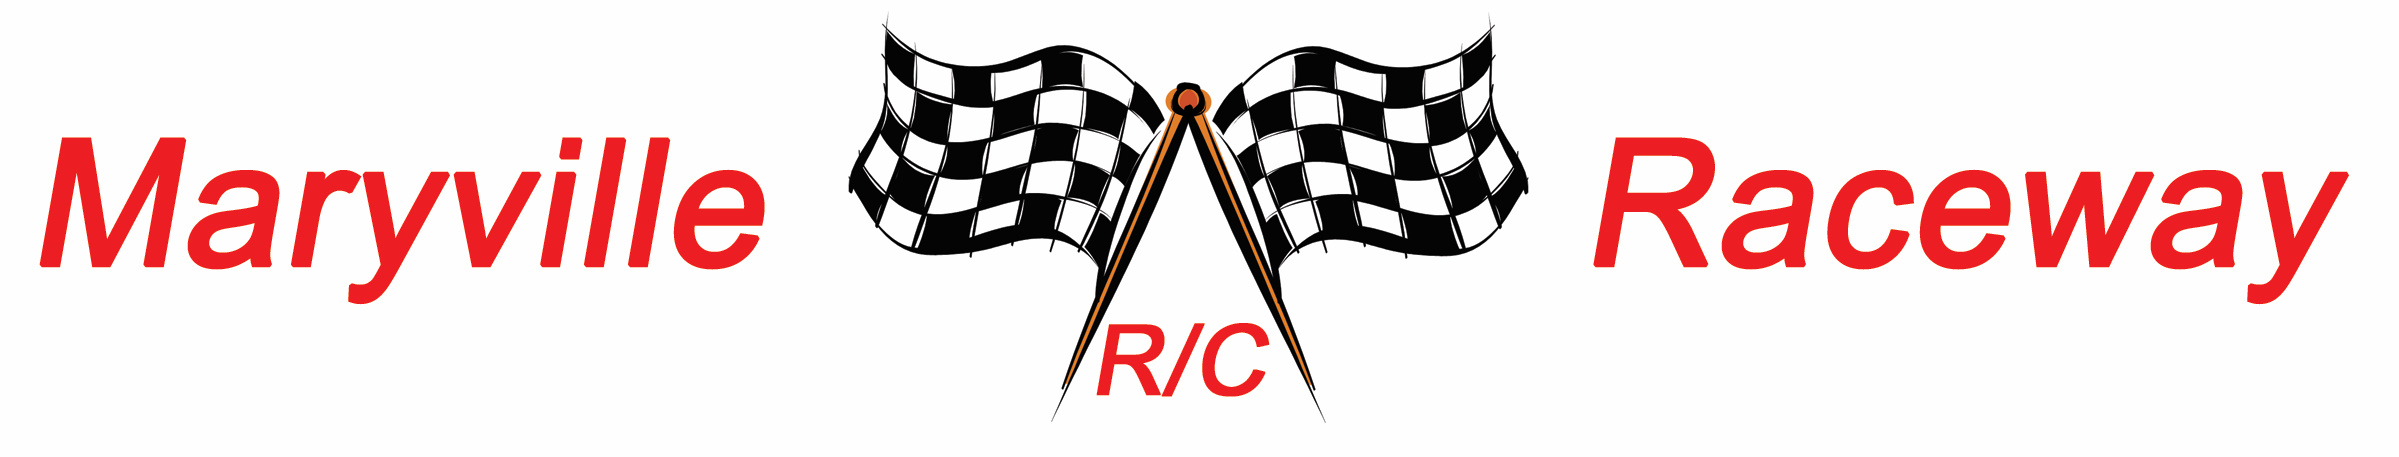 Visit the Maryville Raceway in Maryville, Illinois Website